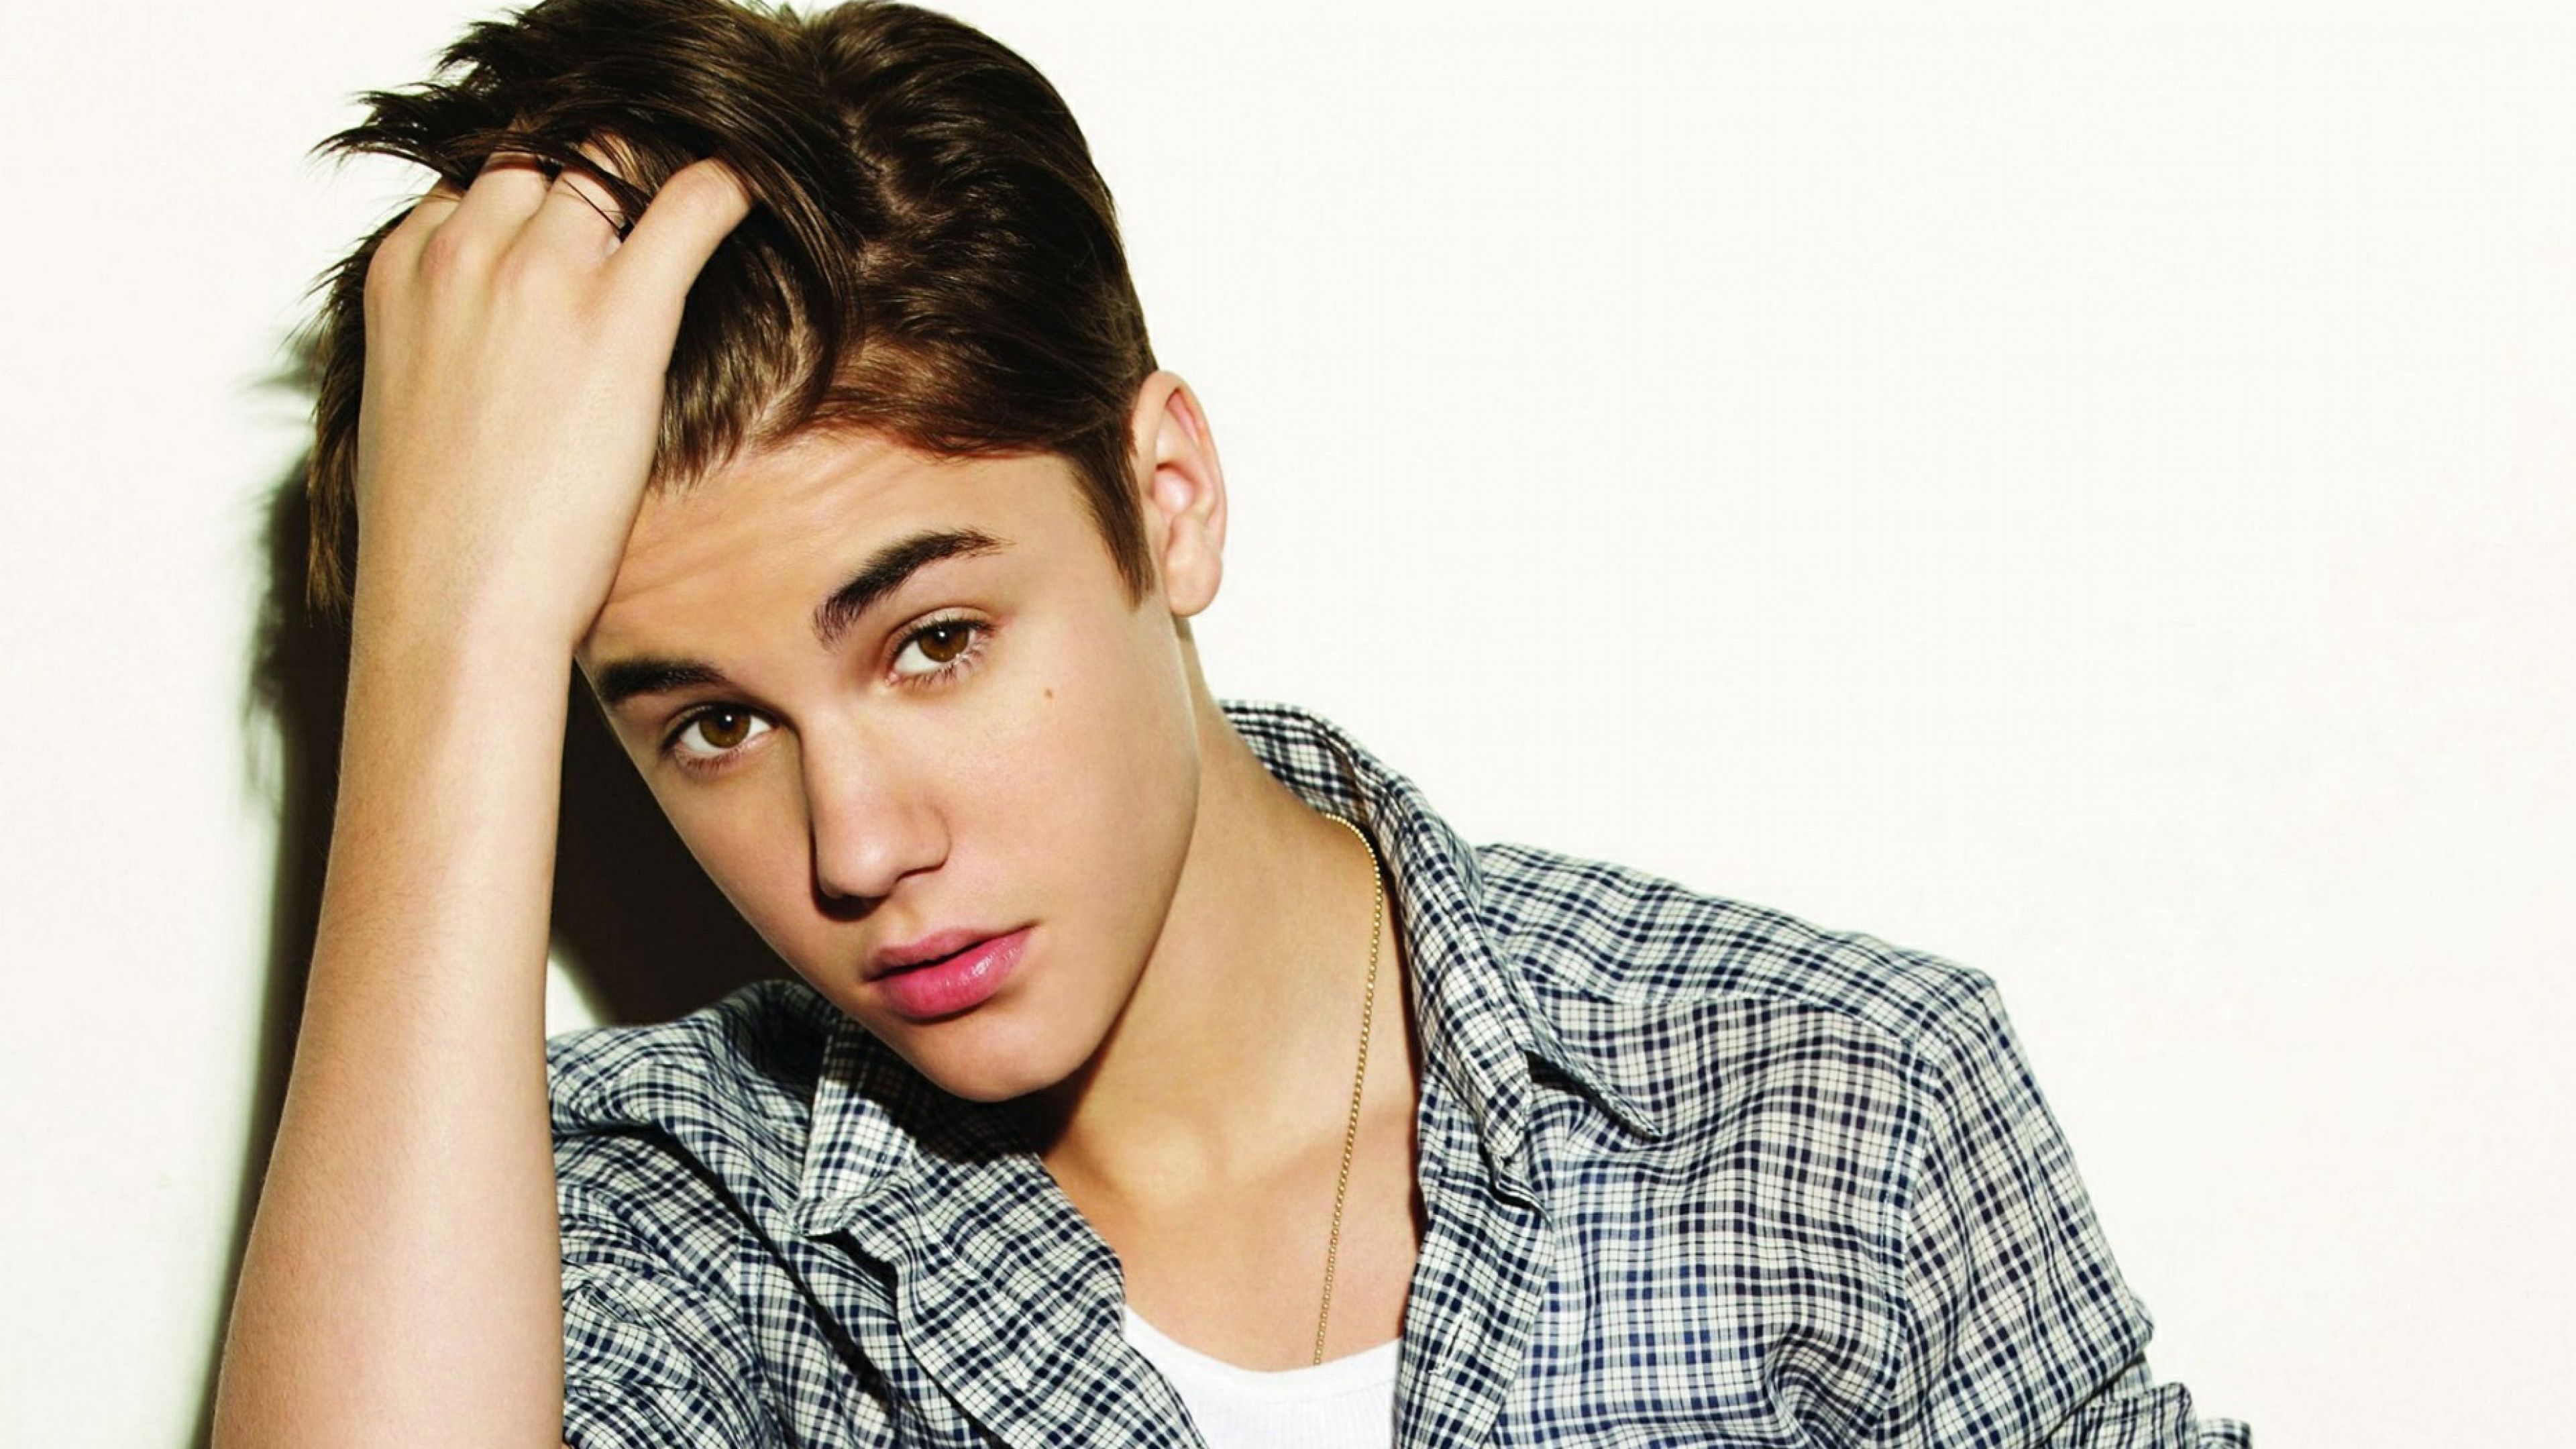 Песни для подростков 15 лет. Джастин Бибер. Джастин Бибер фото. Justin (Singer, born 2002). Justin Bieber 2015.